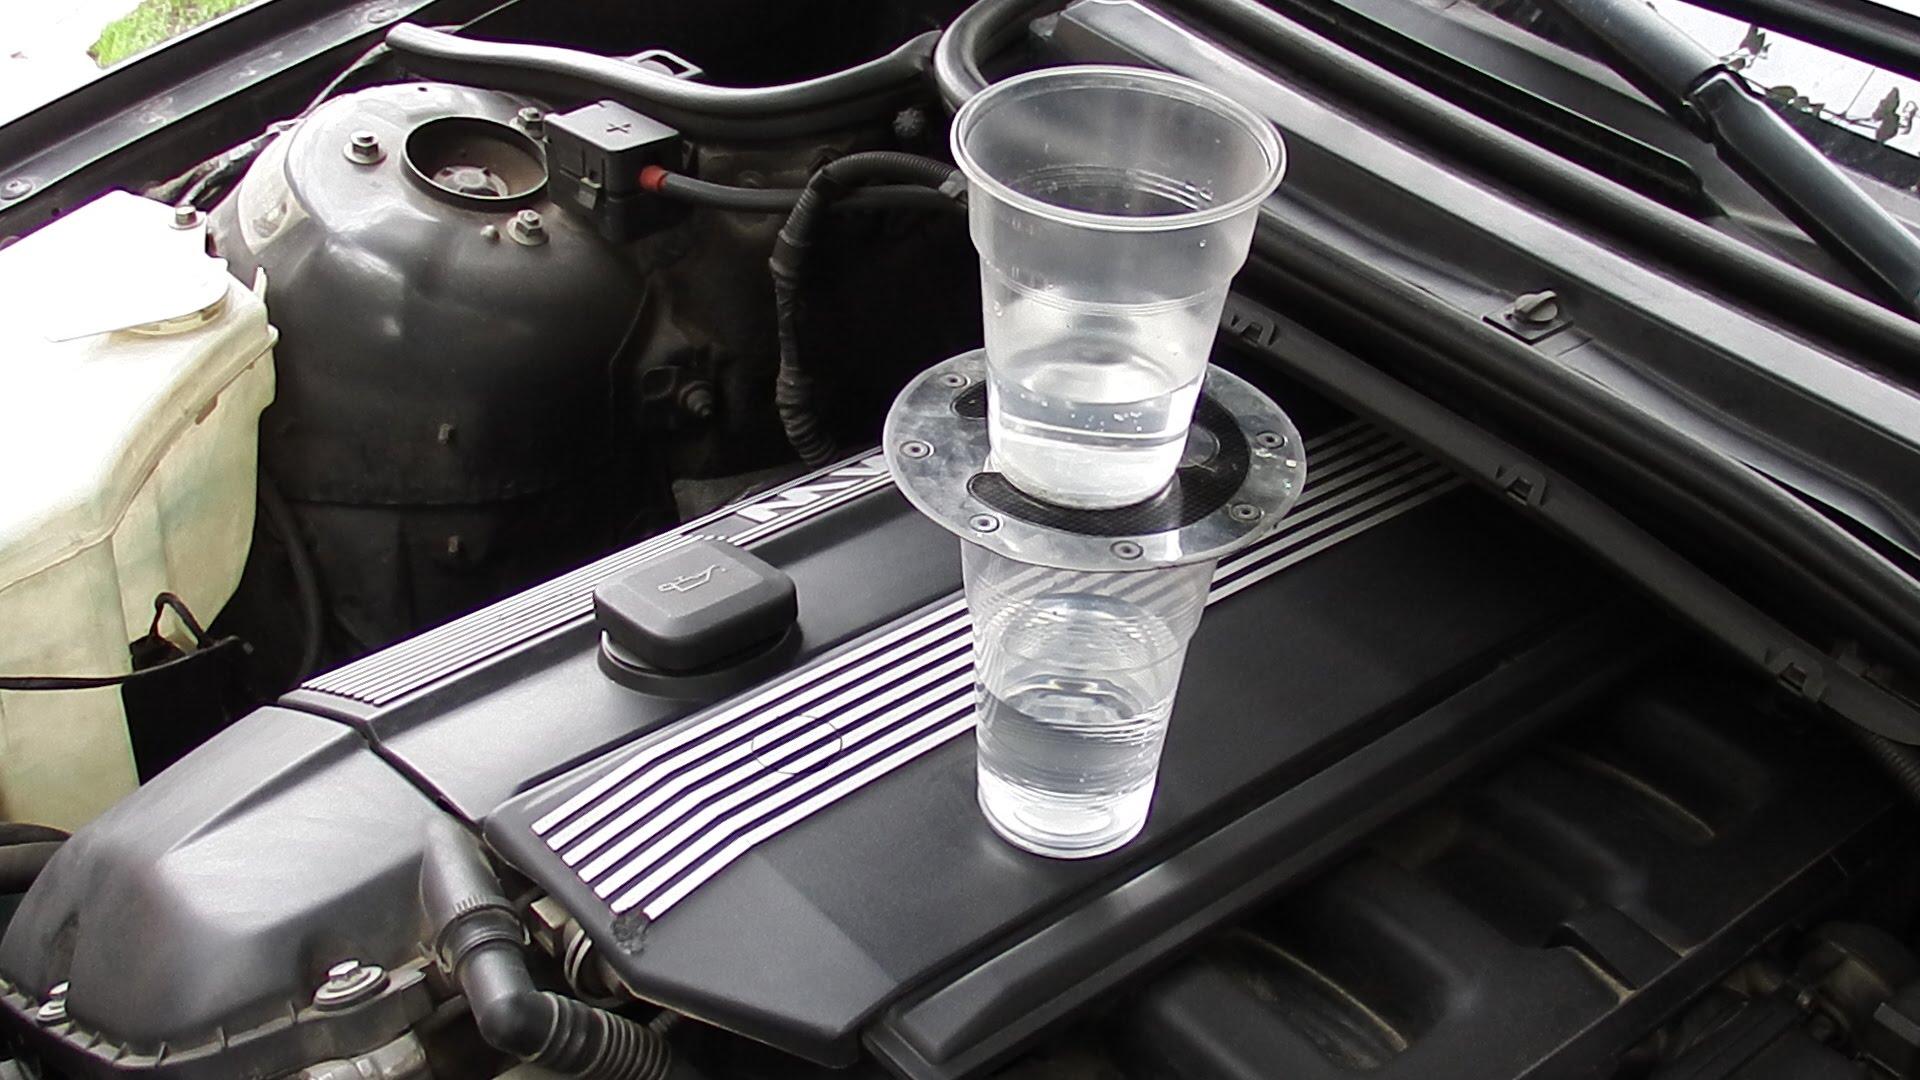 Come rimuovere l'umidità dall'auto e quale potrebbe essere la sua causa? A cosa può portare l'umidità in un'auto?